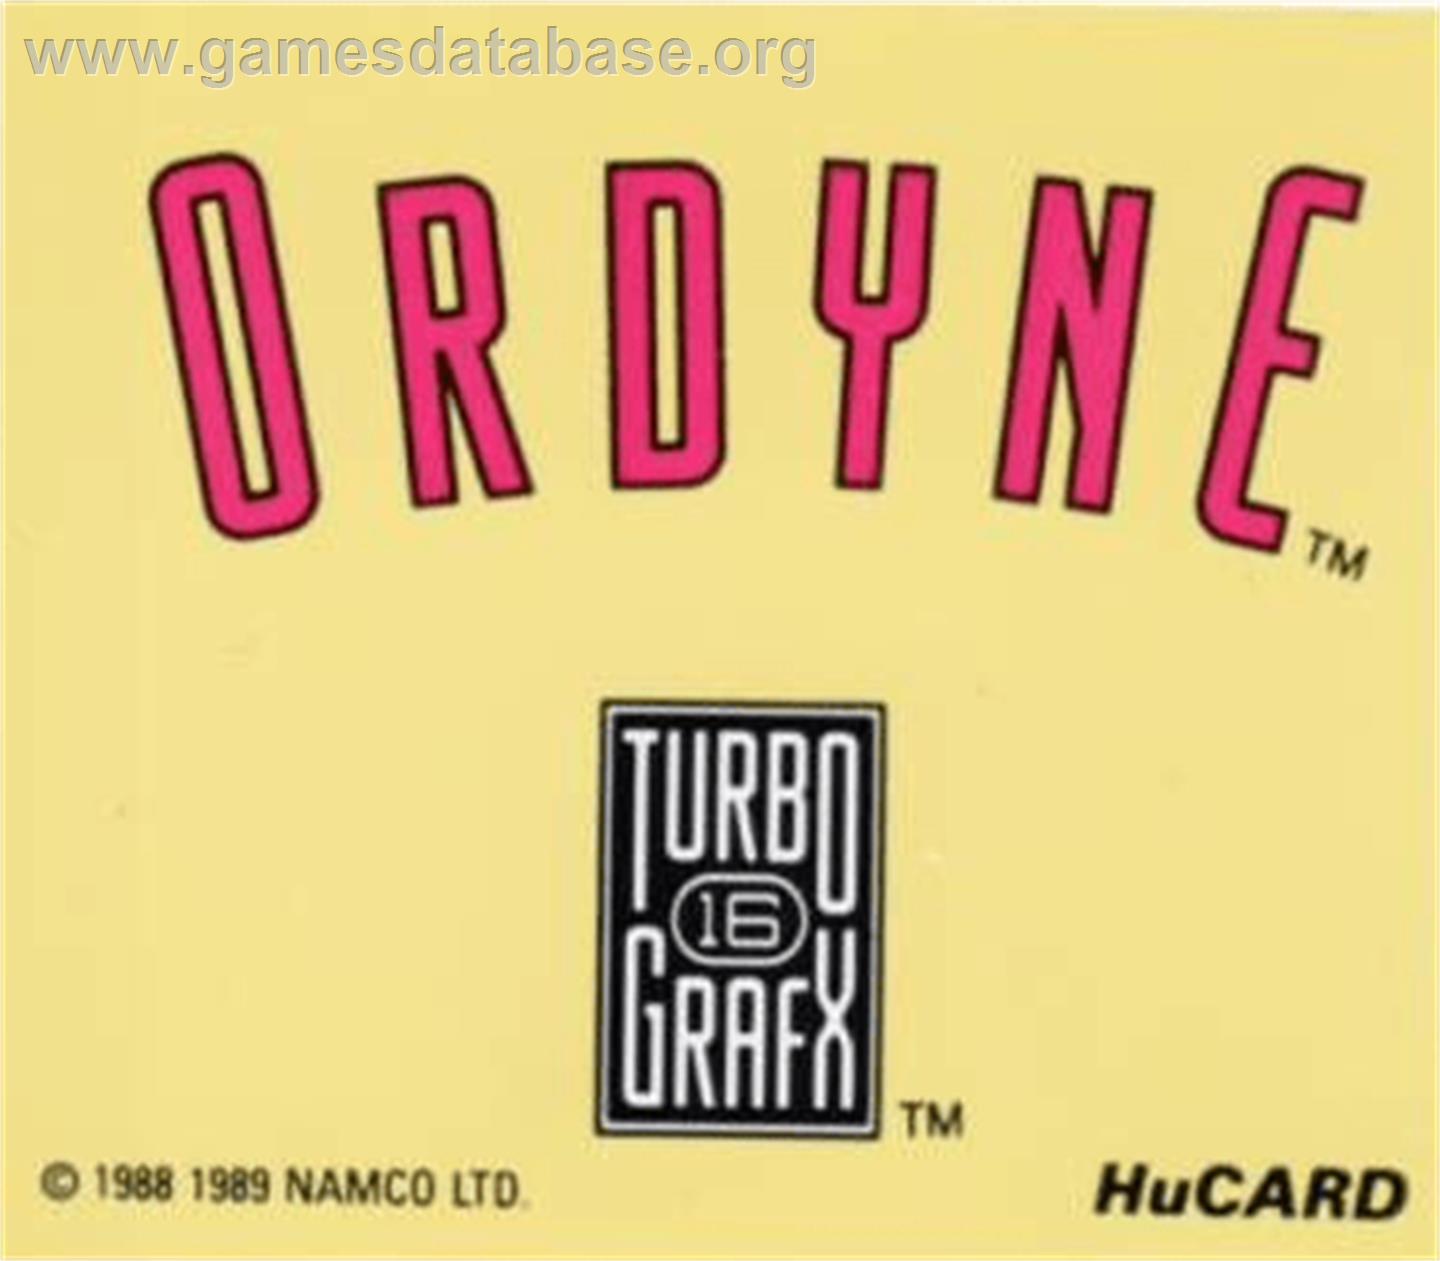 Ordyne - NEC TurboGrafx-16 - Artwork - Cartridge Top